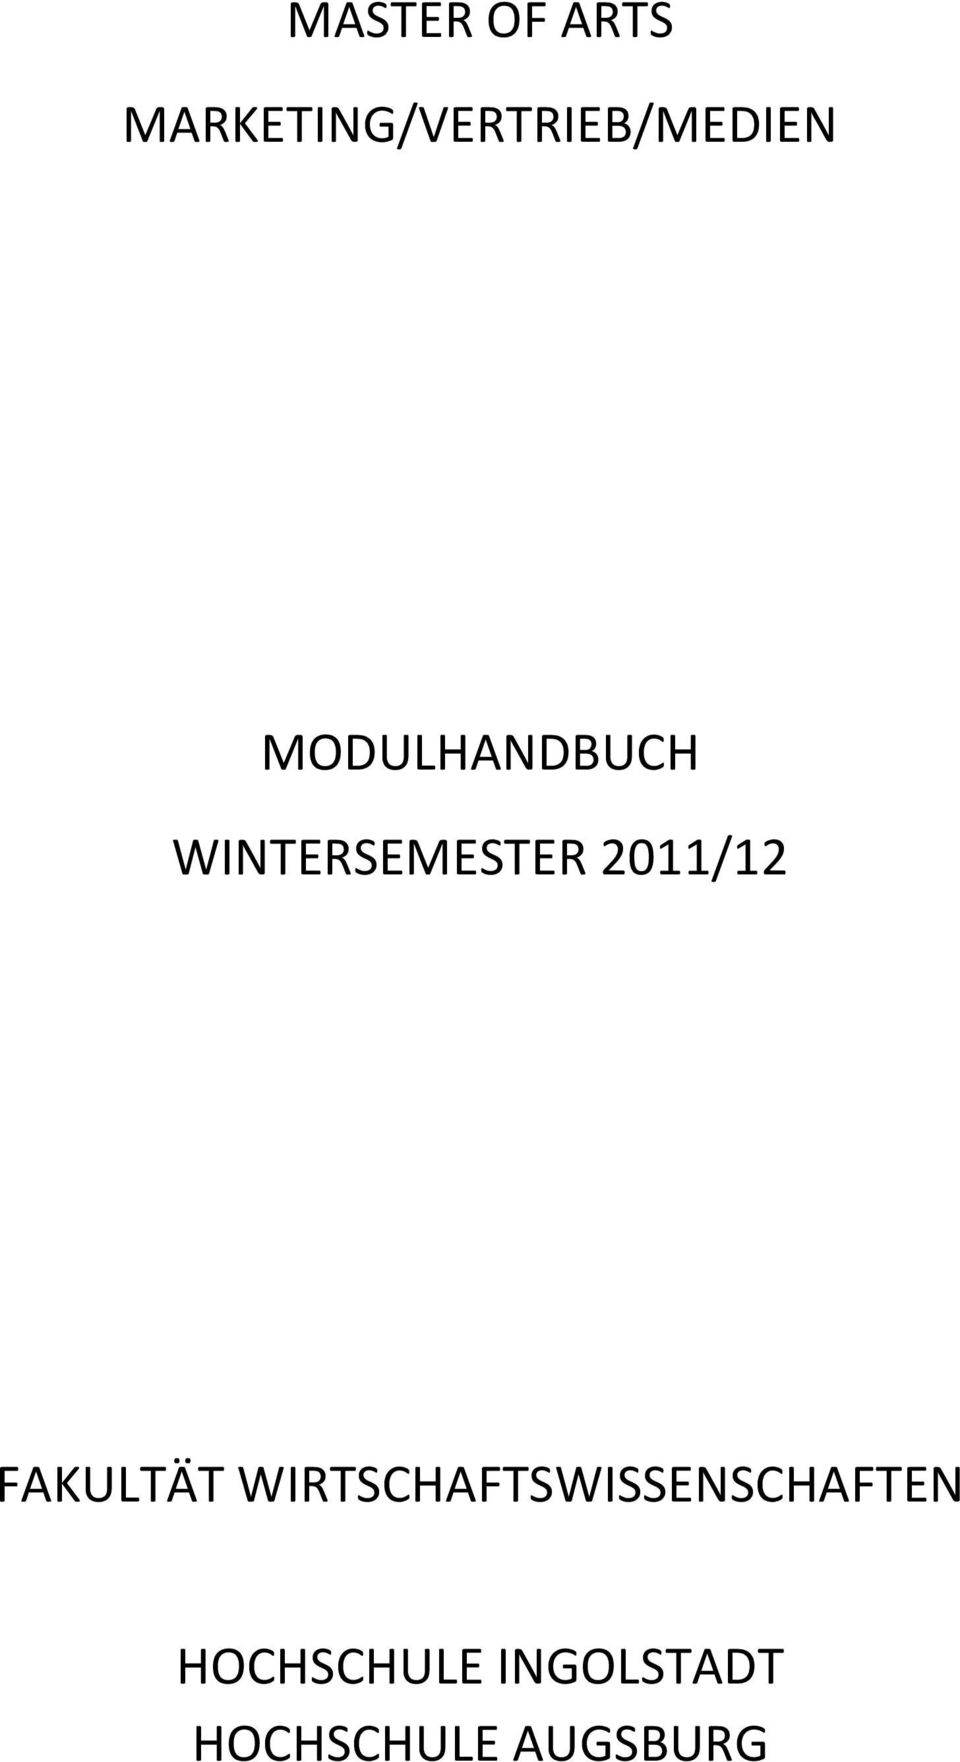 MODULHANDBUCH WINTERSEMESTER 2011/12